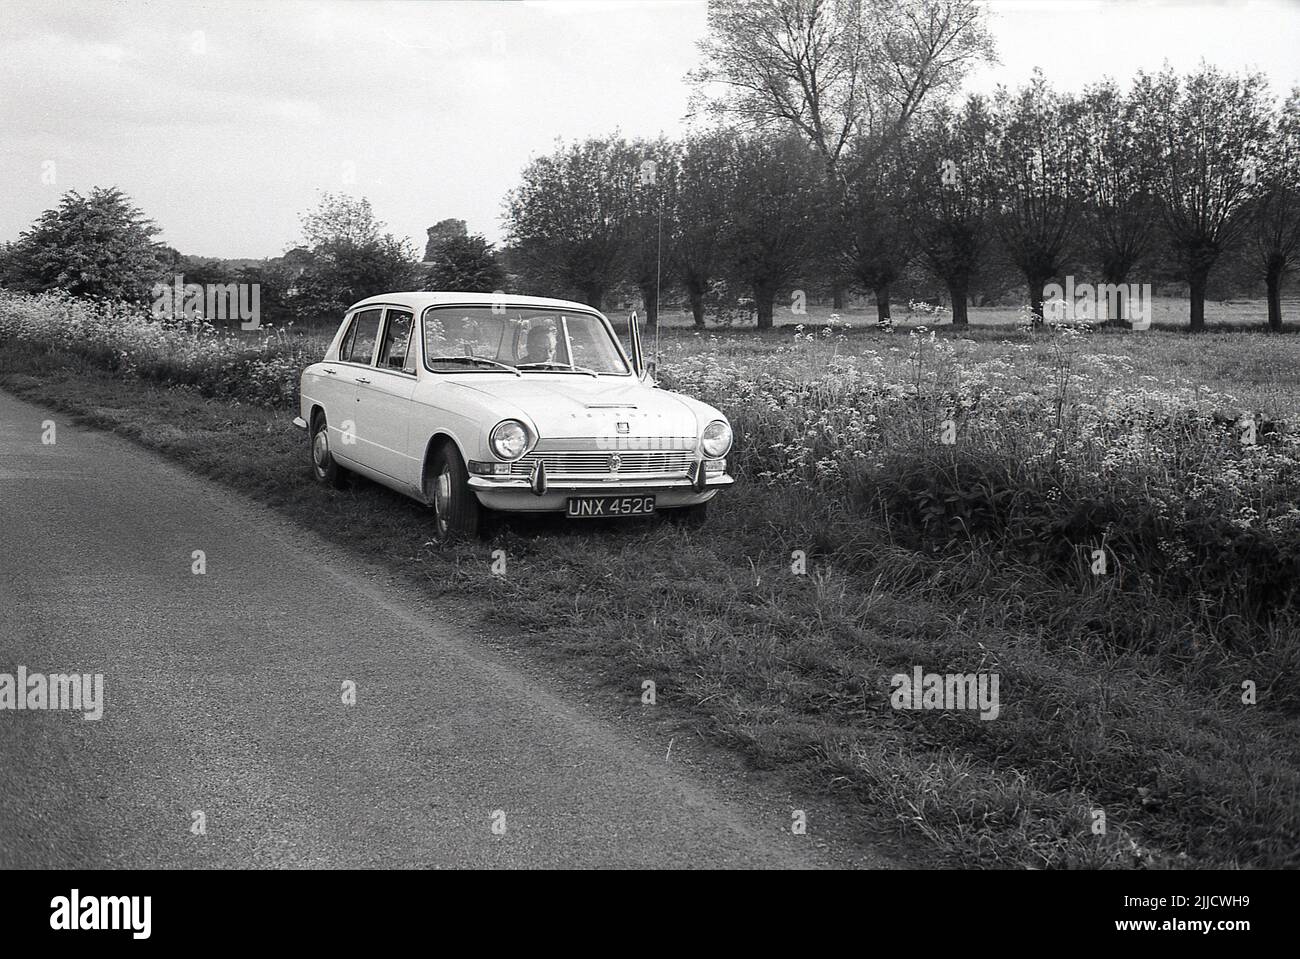 1970s, historisch, ein Gentleman, der auf dem Beifahrersitz eines Triumph Dolomite Autos der damaligen Zeit sitzt, geparkt auf einem grasbewachsenen Rand neben einer Landstraße, England, Großbritannien. Die Triumph Dolomite, eine kleine Limousine, wurde von der Tiumph Motor Company hergestellt, die Teil der riesigen British Leyland Corporation (BL. Der Wagen wurde zwischen 1972 und 1980 in Canley, Coventry, produziert. Stockfoto